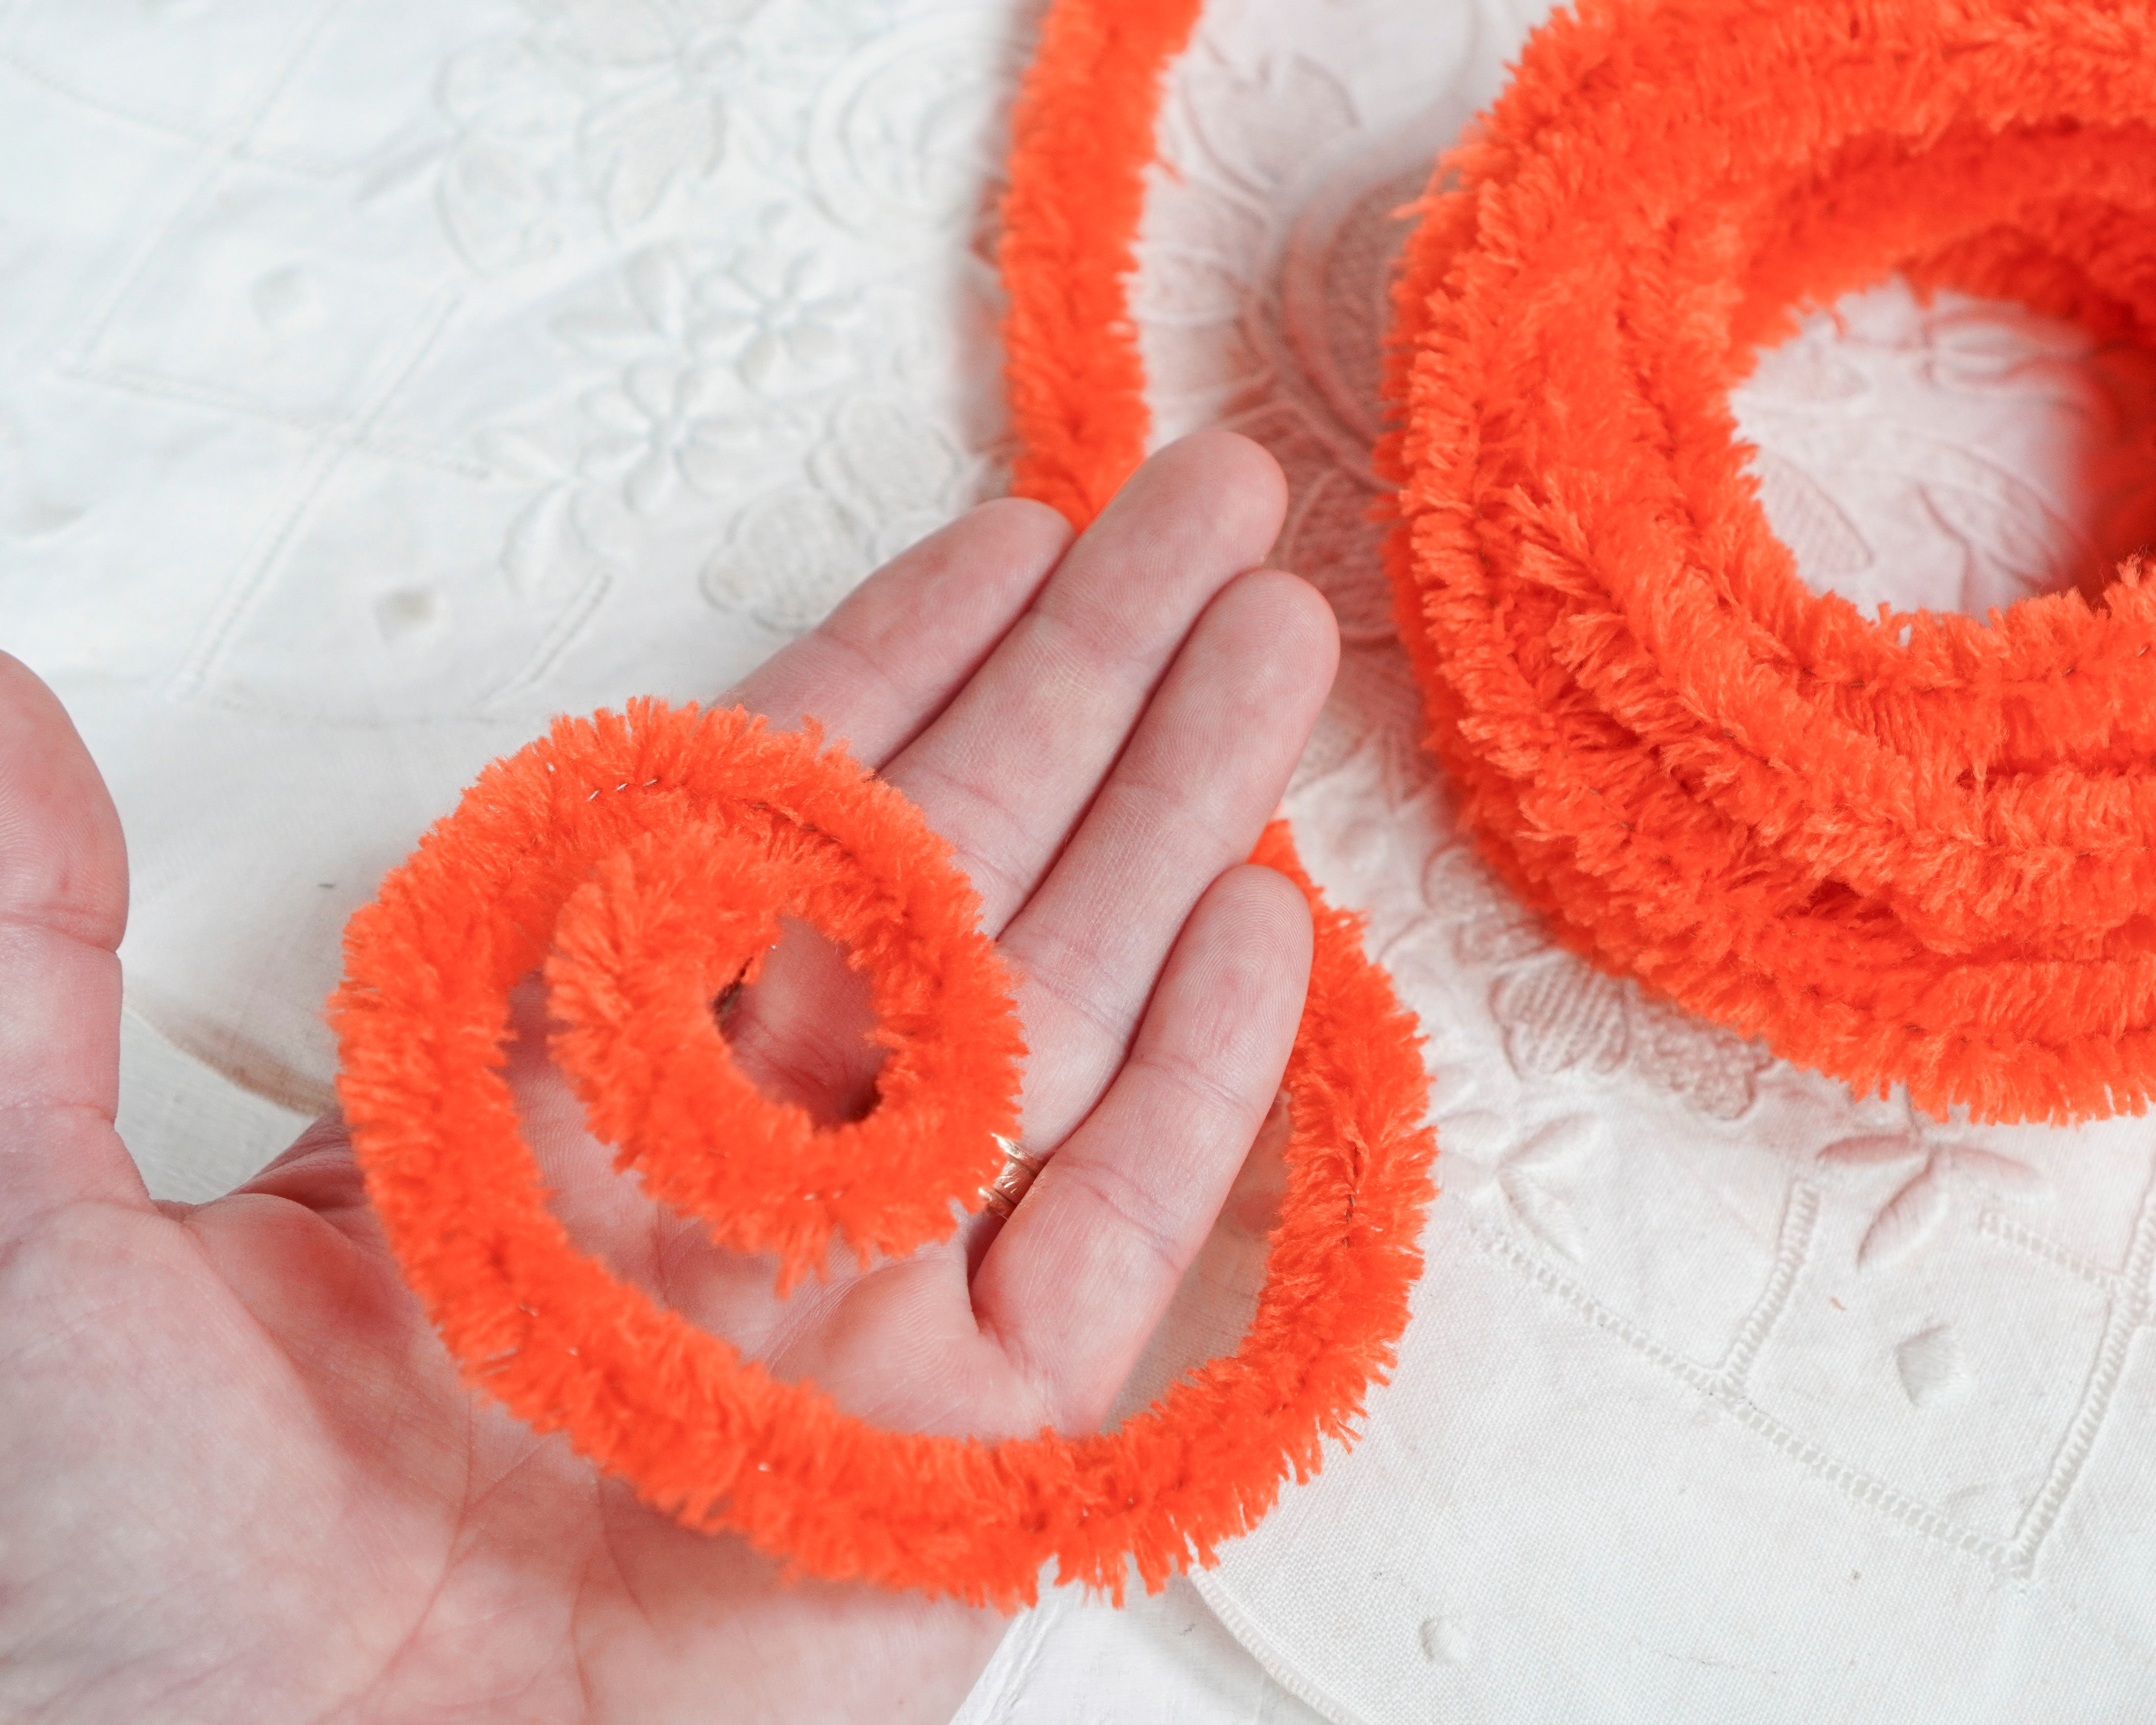 Wired Orange Yarn Trim - Fluffy Yarn Fur Craft Cord, 3 Yds.